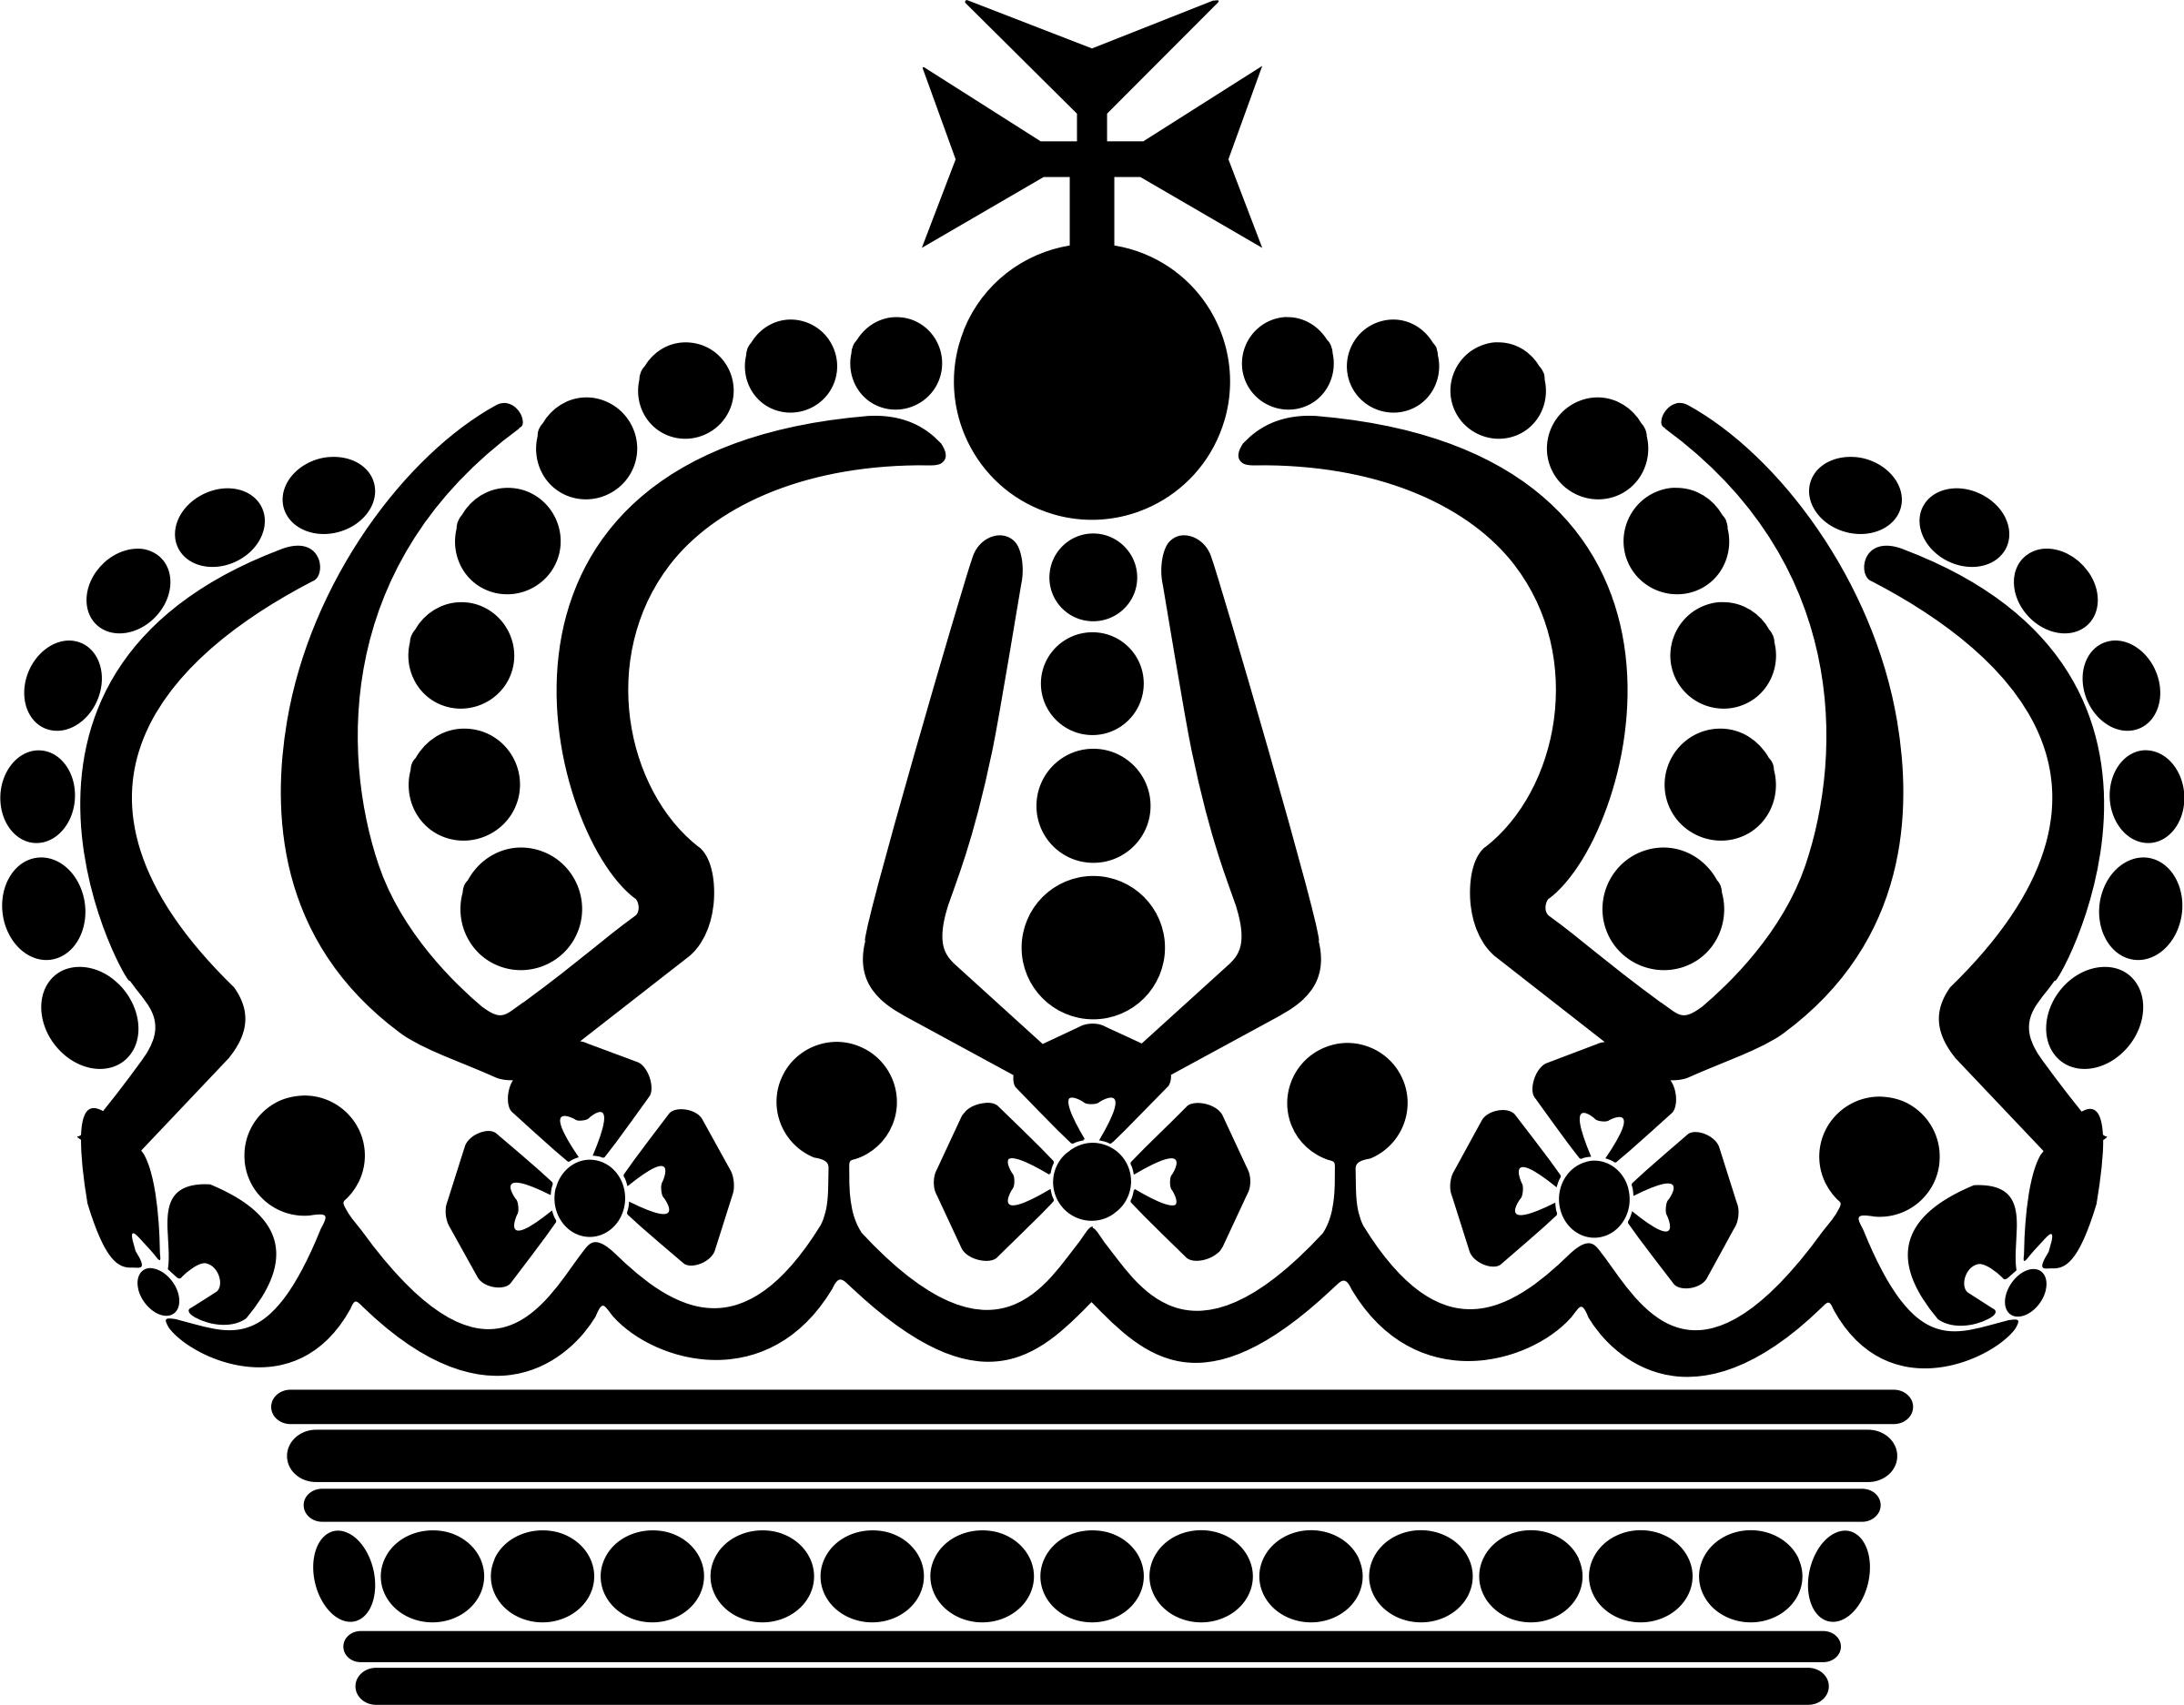 German Imperial Crown PNG icons